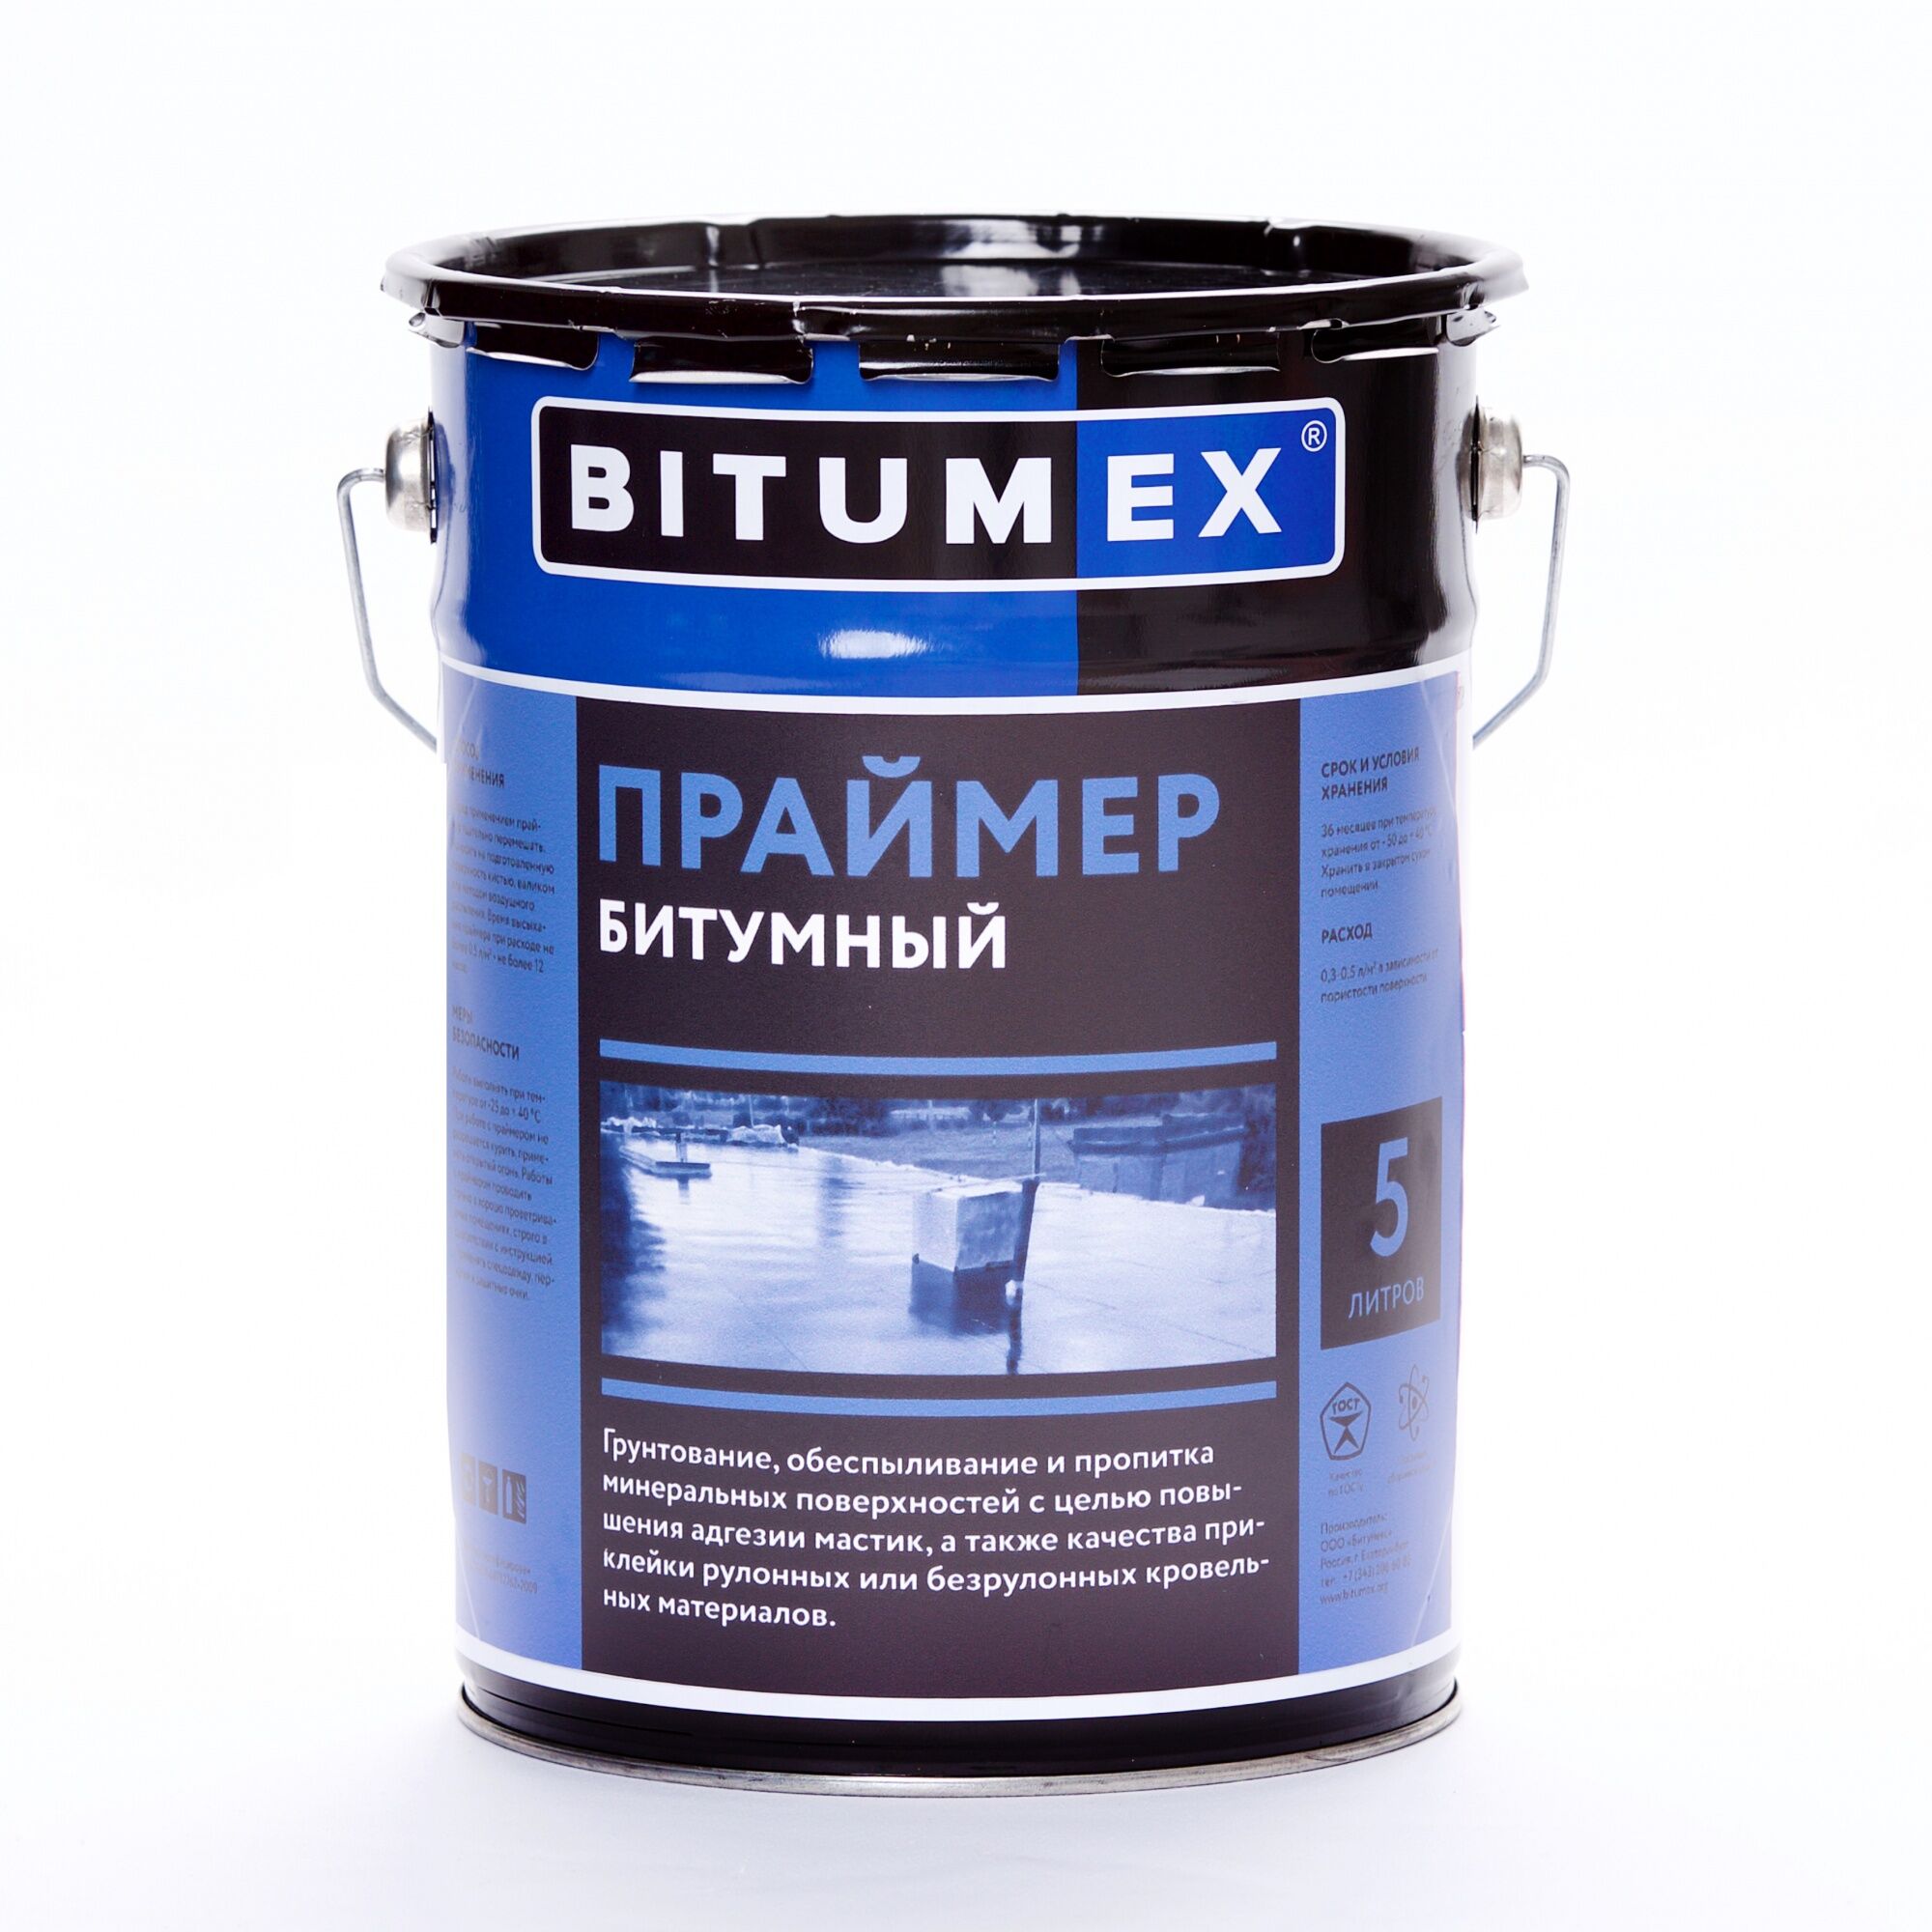 Праймер гост. Праймер BITUMEX битумный 5л. Праймер битумный BITUMEX эконом, 21,5л. Мастика битумная гидроизоляционная BITUMEX эконом, 22кг. Праймер битумный SMARTMIX 5л..